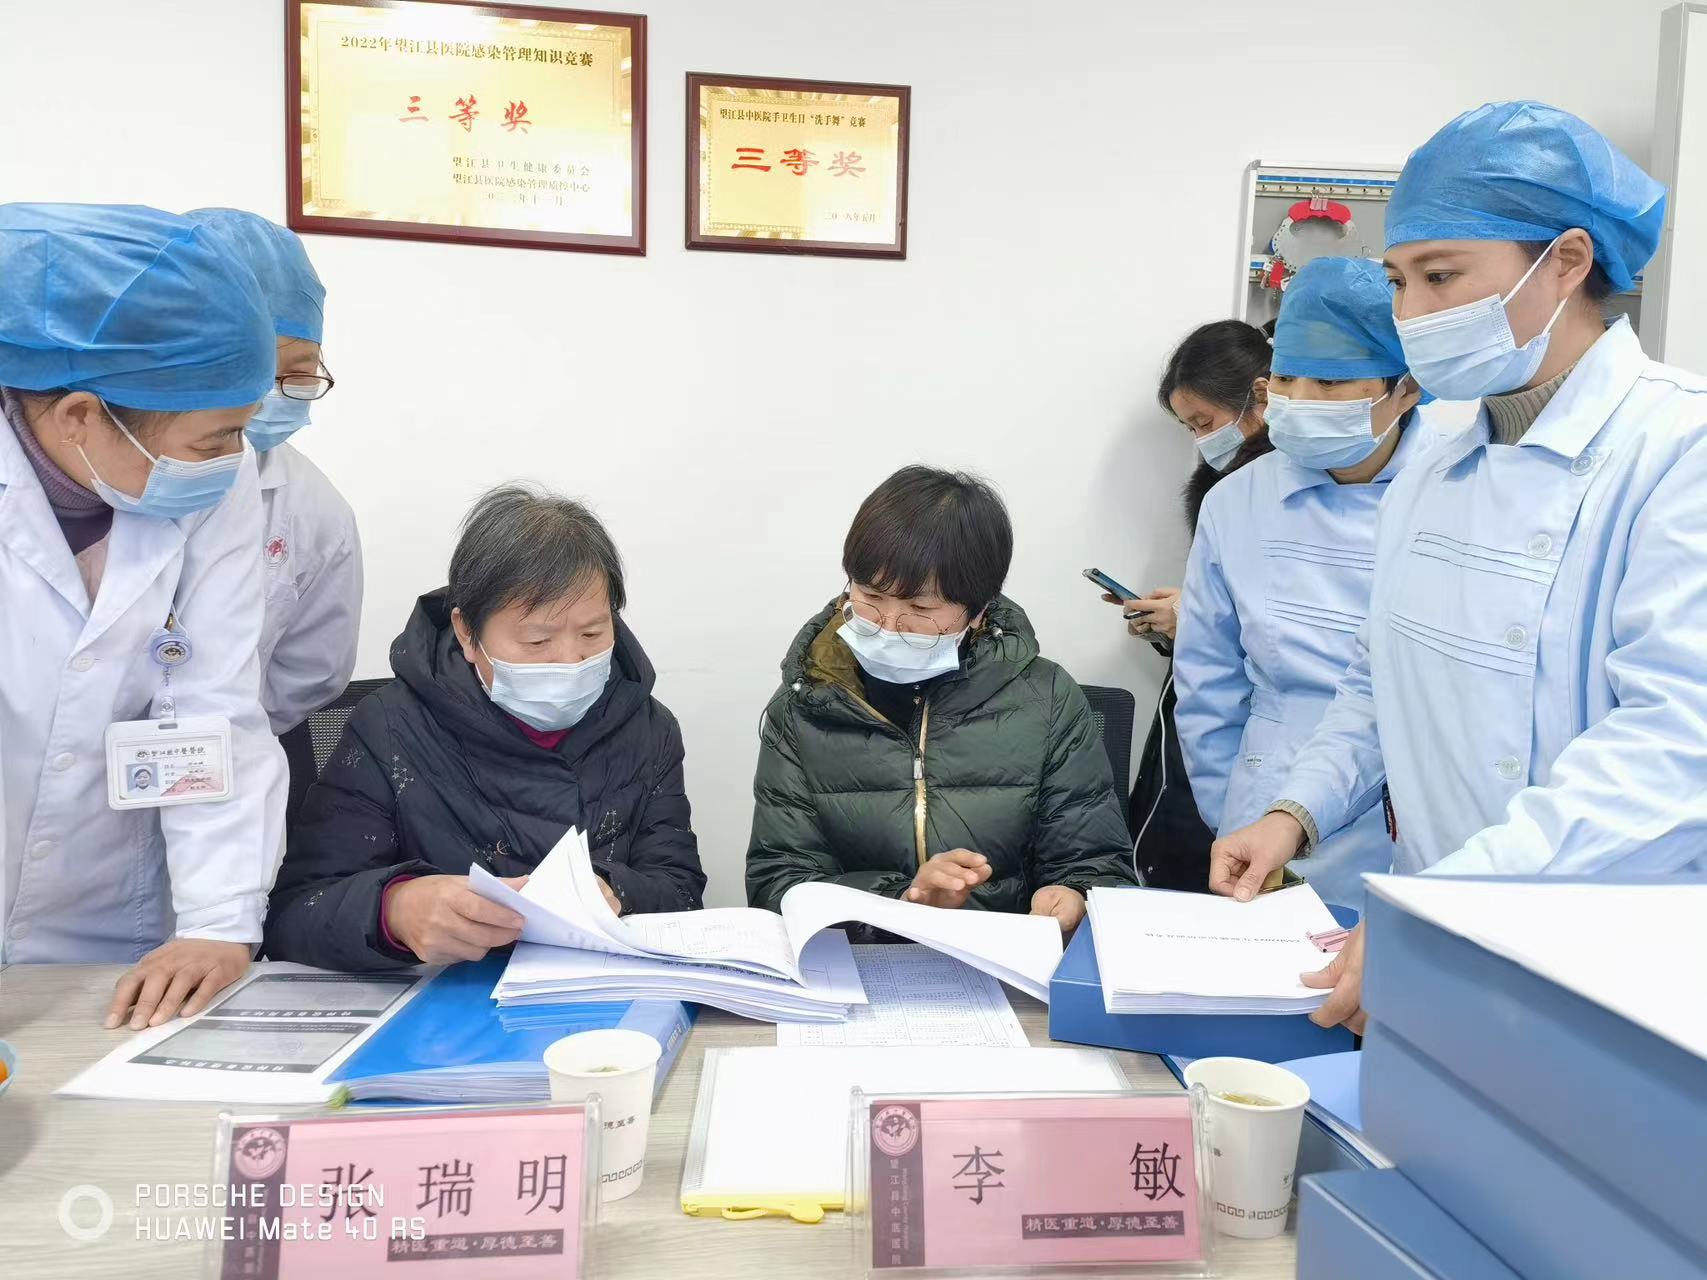 安徽省消毒供應質量控制中心專家組來院進行醫療質量評估工作